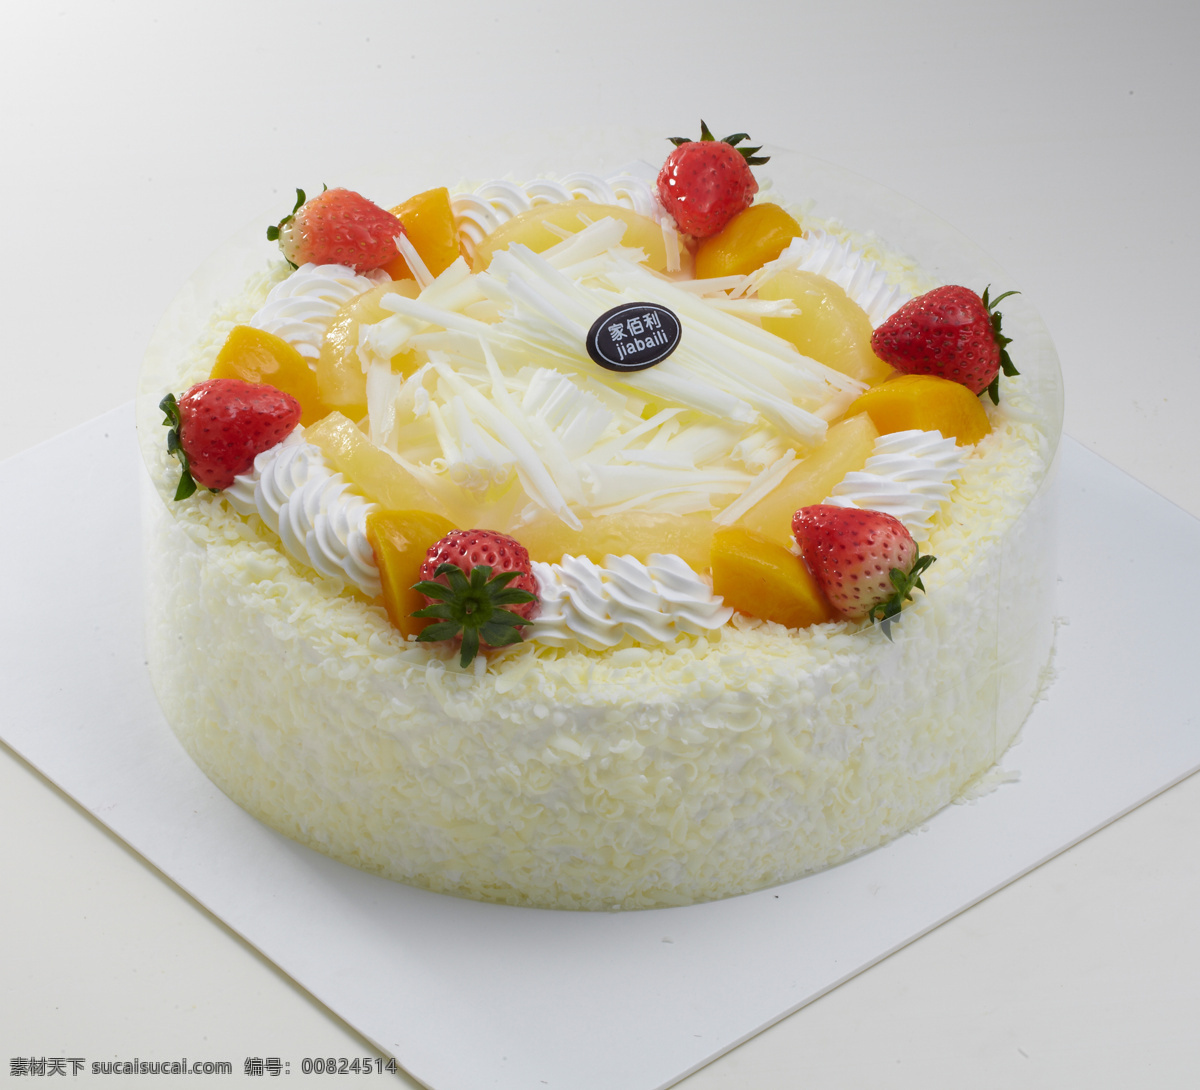 慕斯蛋糕 美食素材 精致蛋糕 鲜花蛋糕 网红蛋糕 烘焙 私坊蛋糕 蛋糕素材 生日蛋糕 海报 创意蛋糕 定制 定制蛋糕 餐饮美食